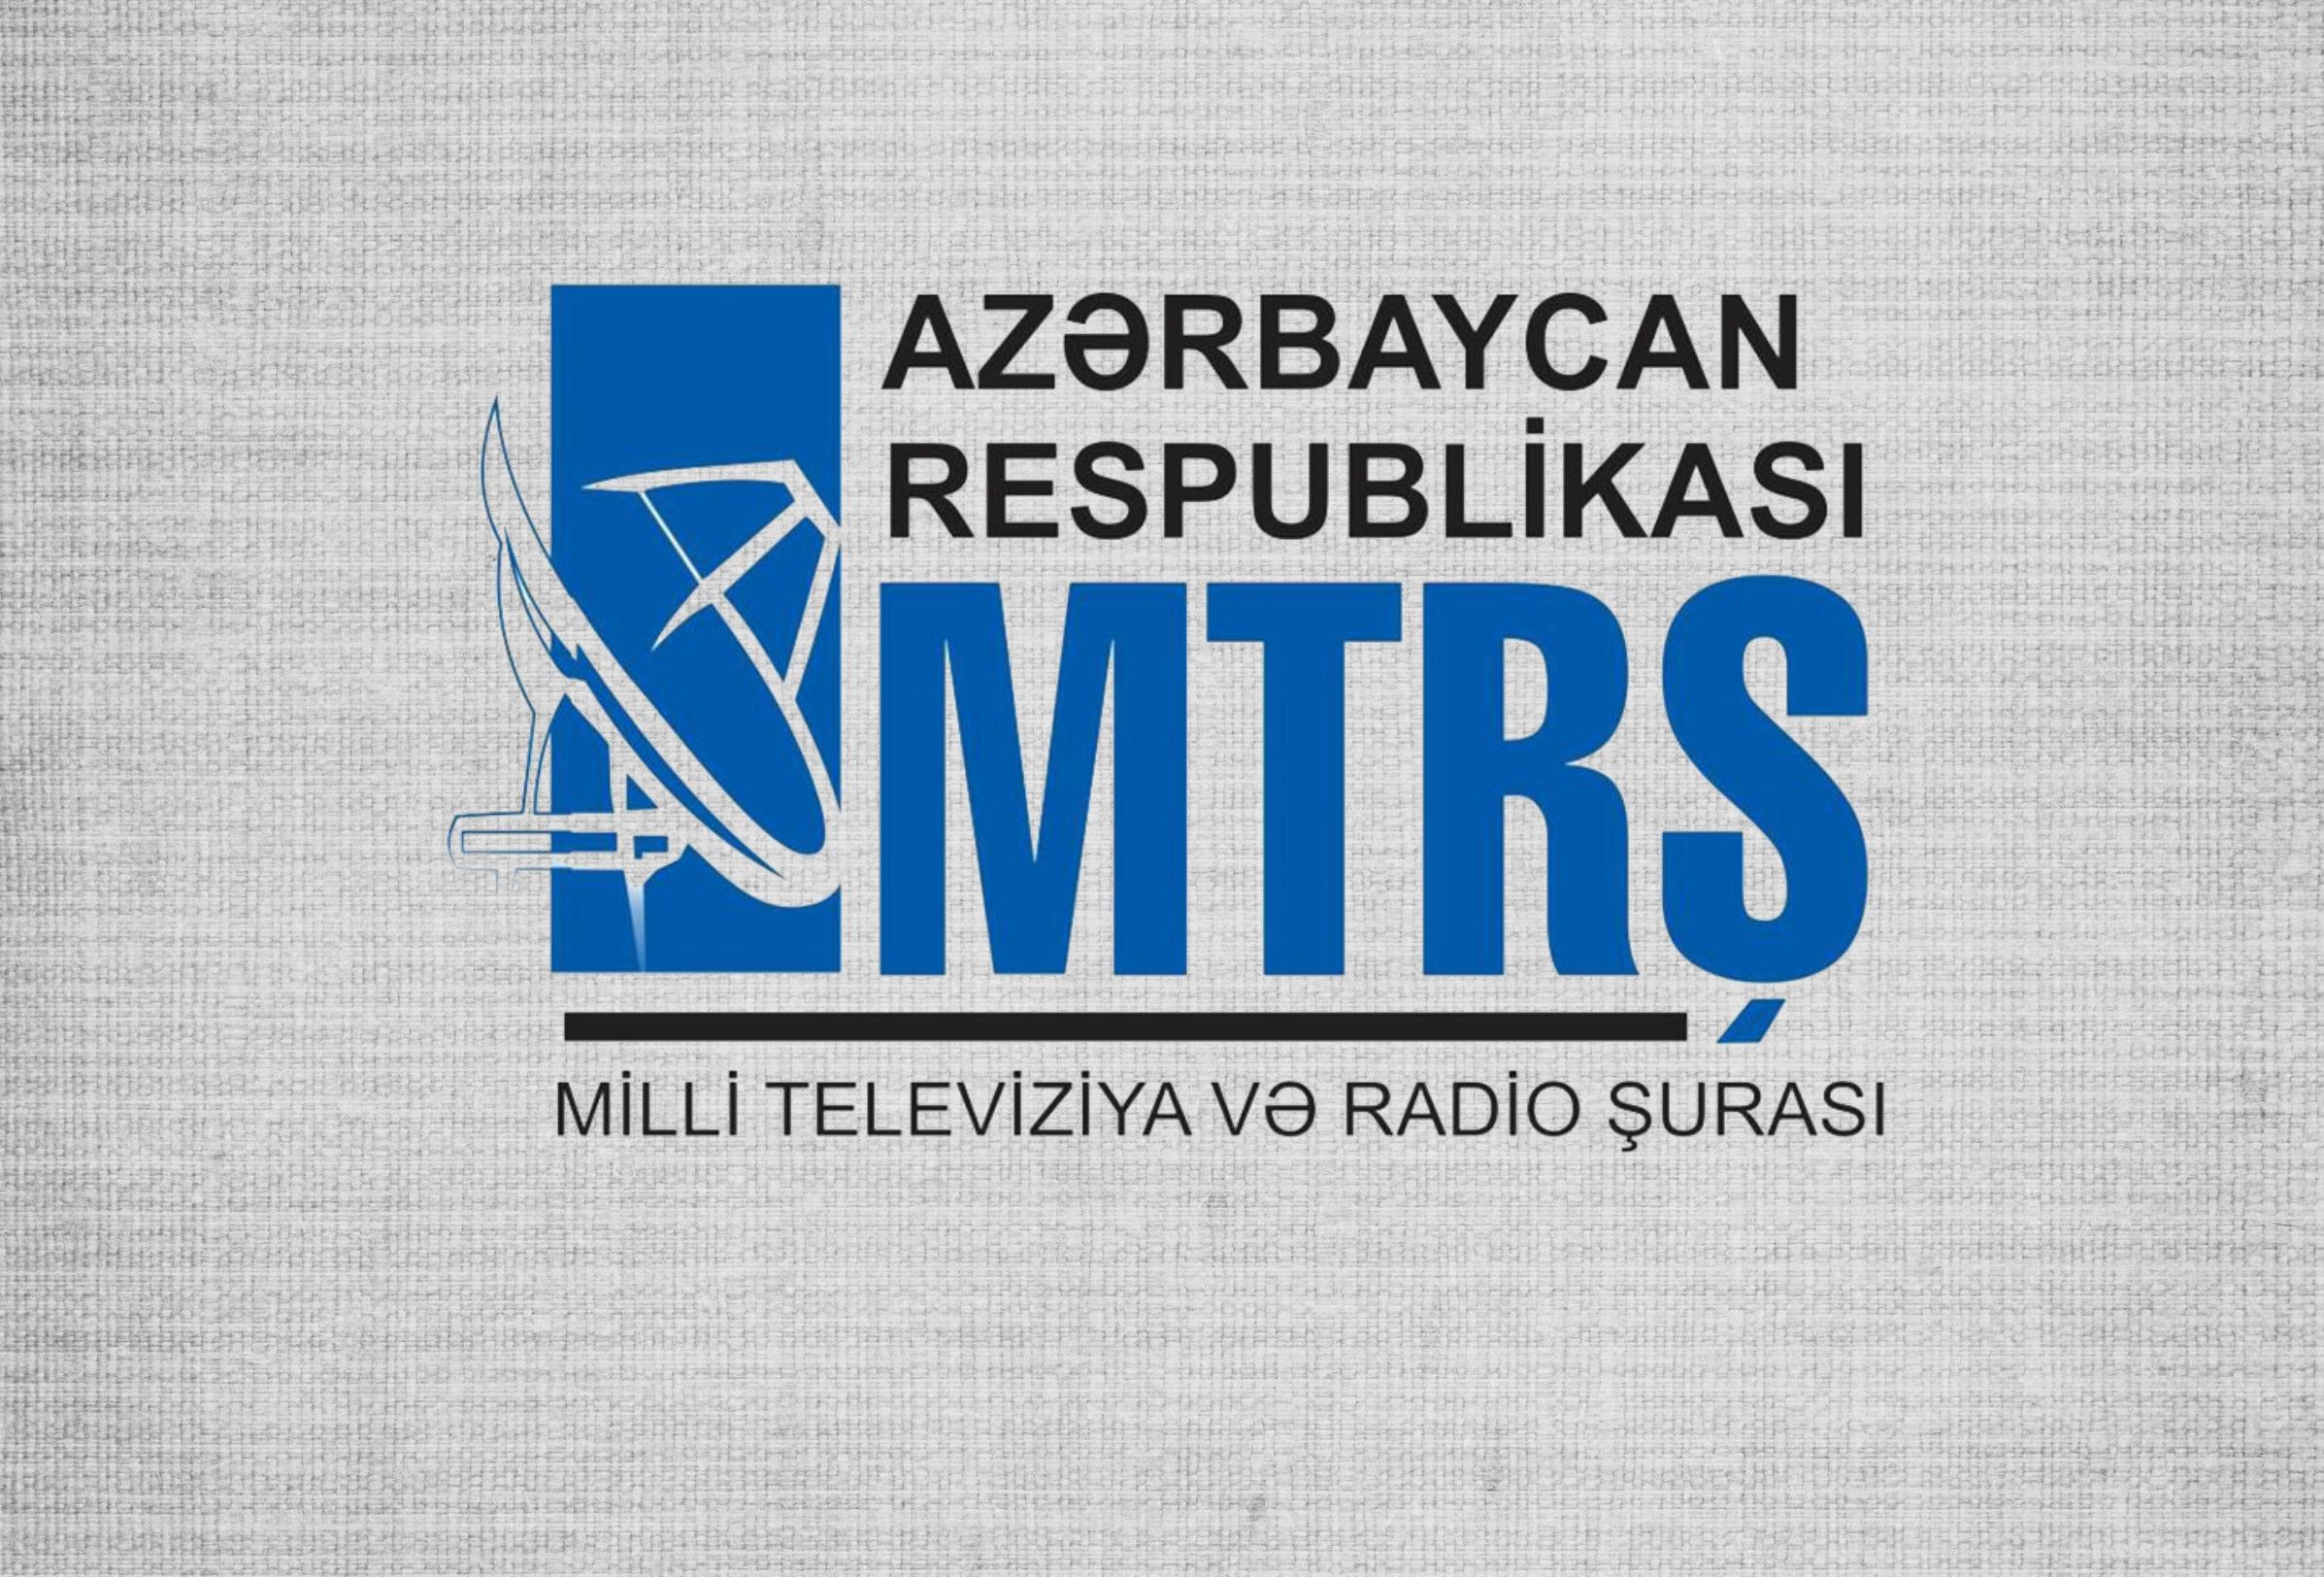 MTRŞ yeni radio kanalının açılması üzrə müsabiqədə iştirakın şərtlərini açıqlayıb